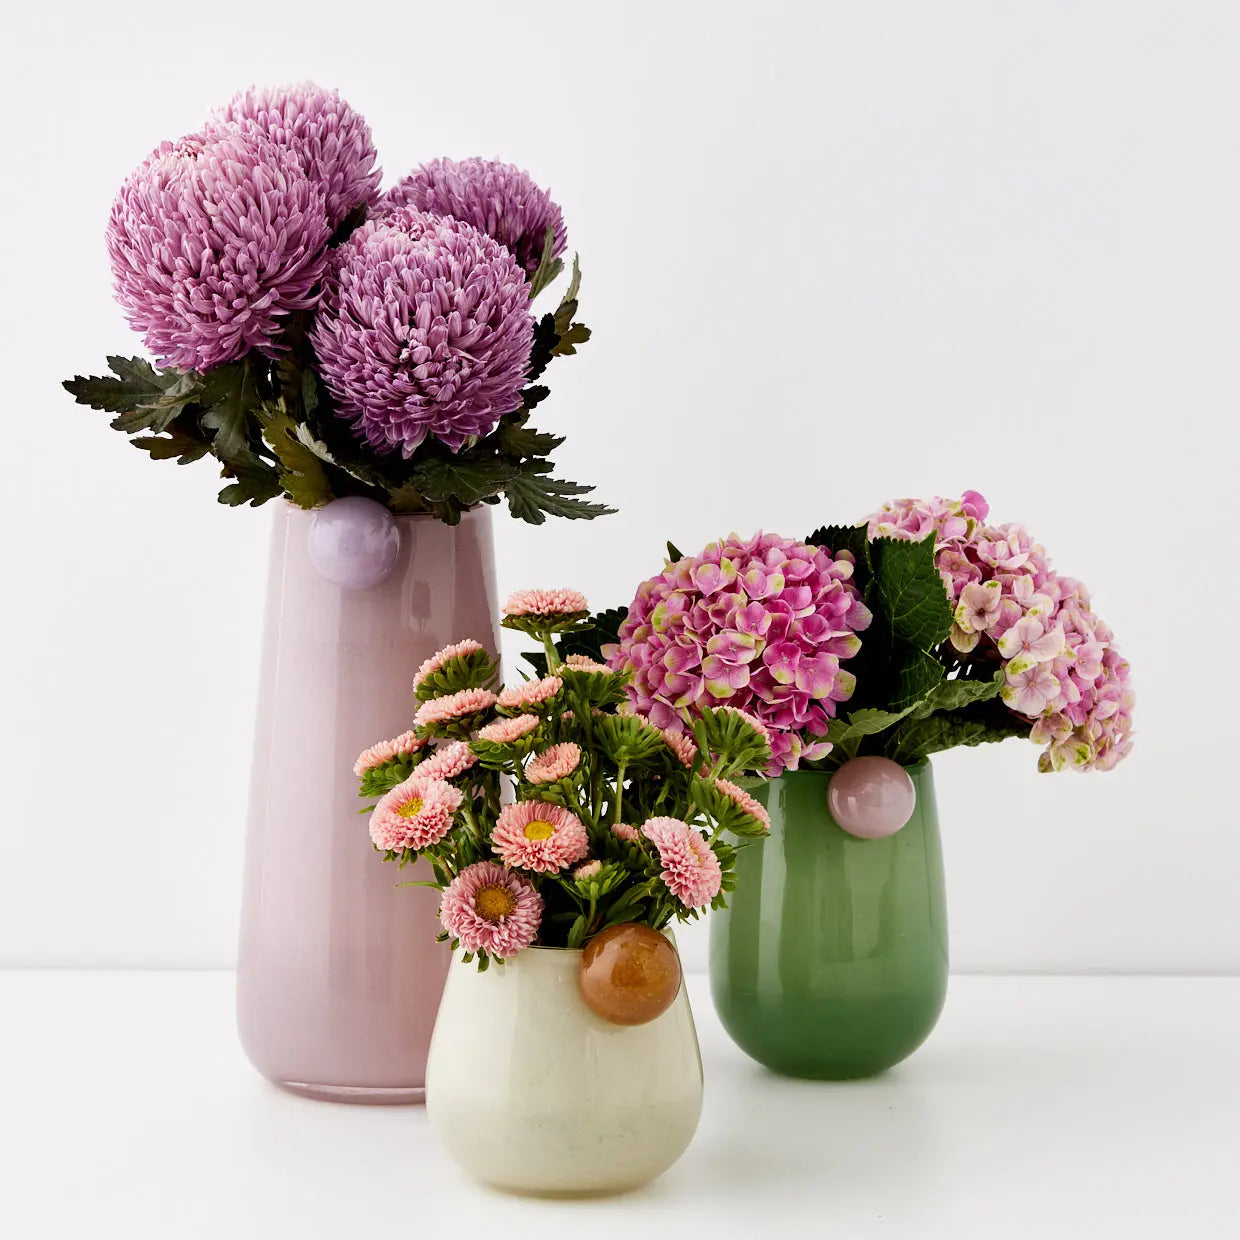 Droplet Medium Coloured Glass Vase Teal - GigiandTom